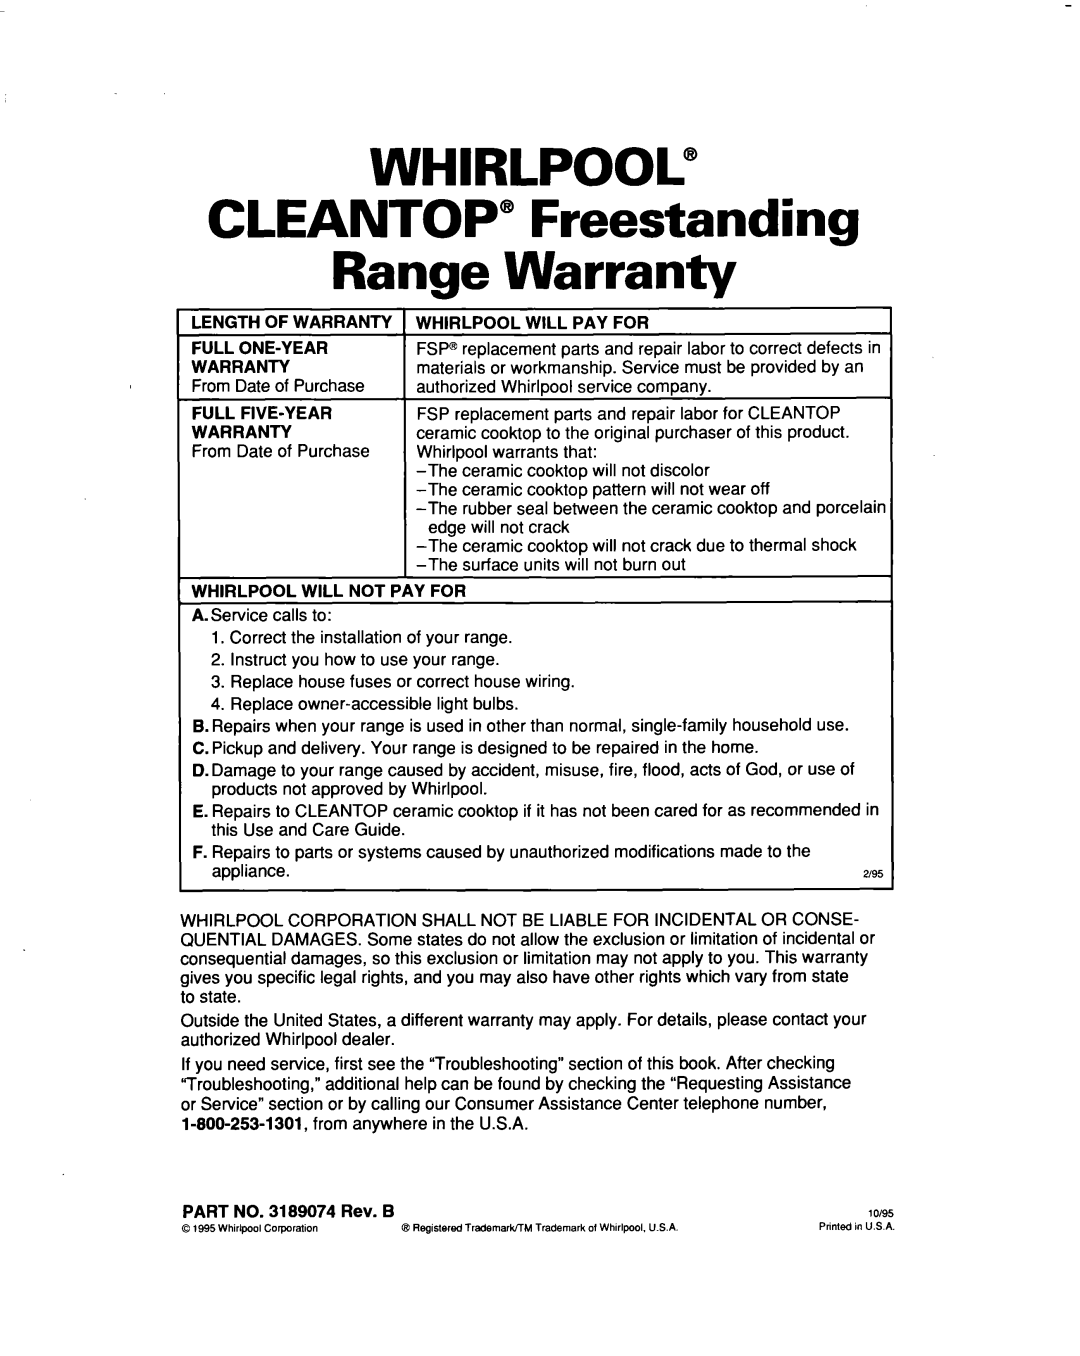 Whirlpool RF354BXD warranty WHIRLPOOL@ CLEANTOP” Freestanding Range Warranty 